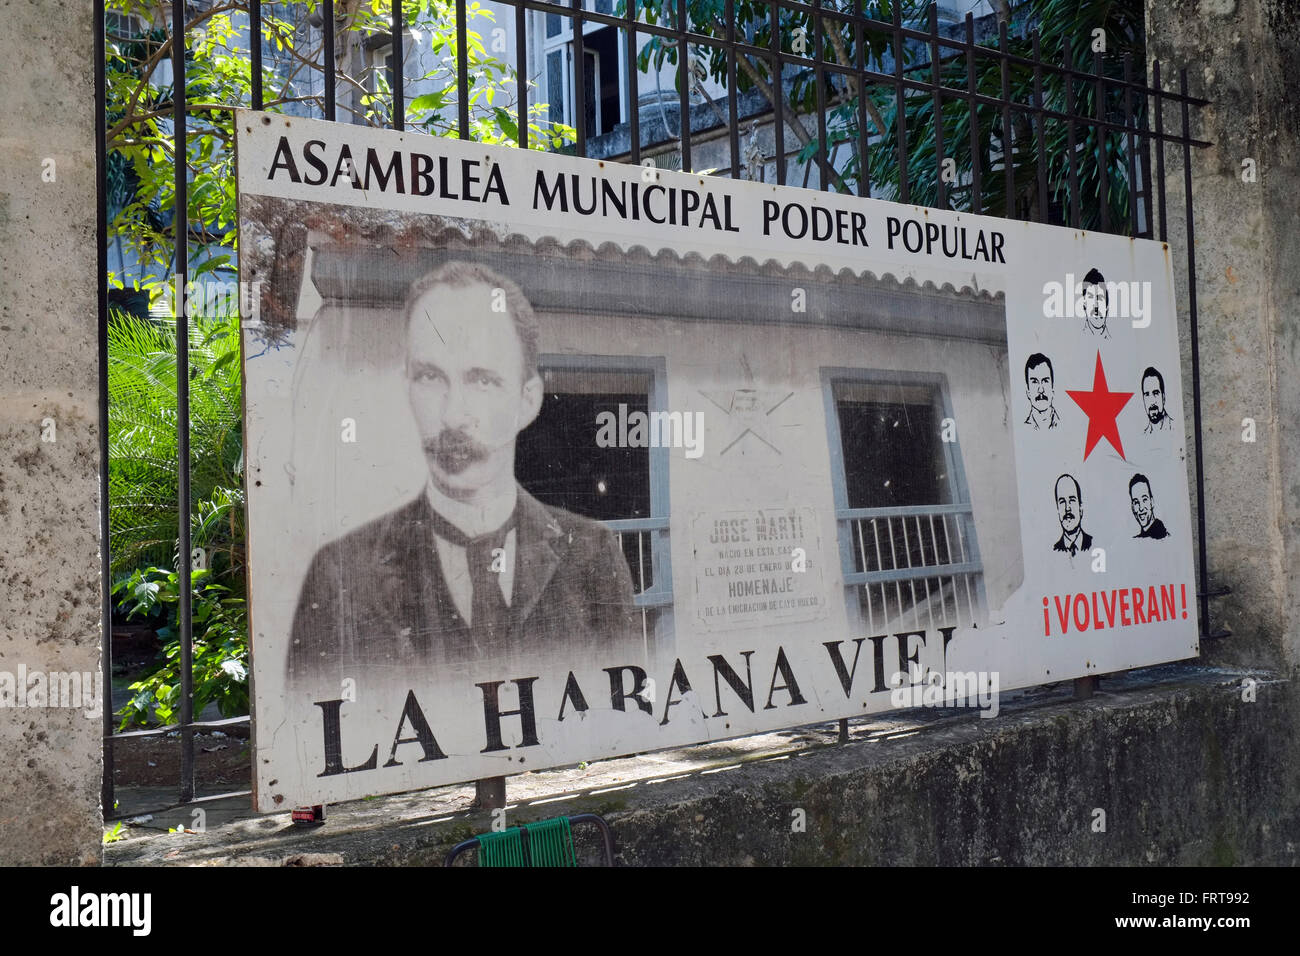 Une affiche de la politique municipale pour l'Asamblea Poder Popular (Assemblée Municipale de pouvoir des peuples), La Vieille Havane, Cuba. Banque D'Images